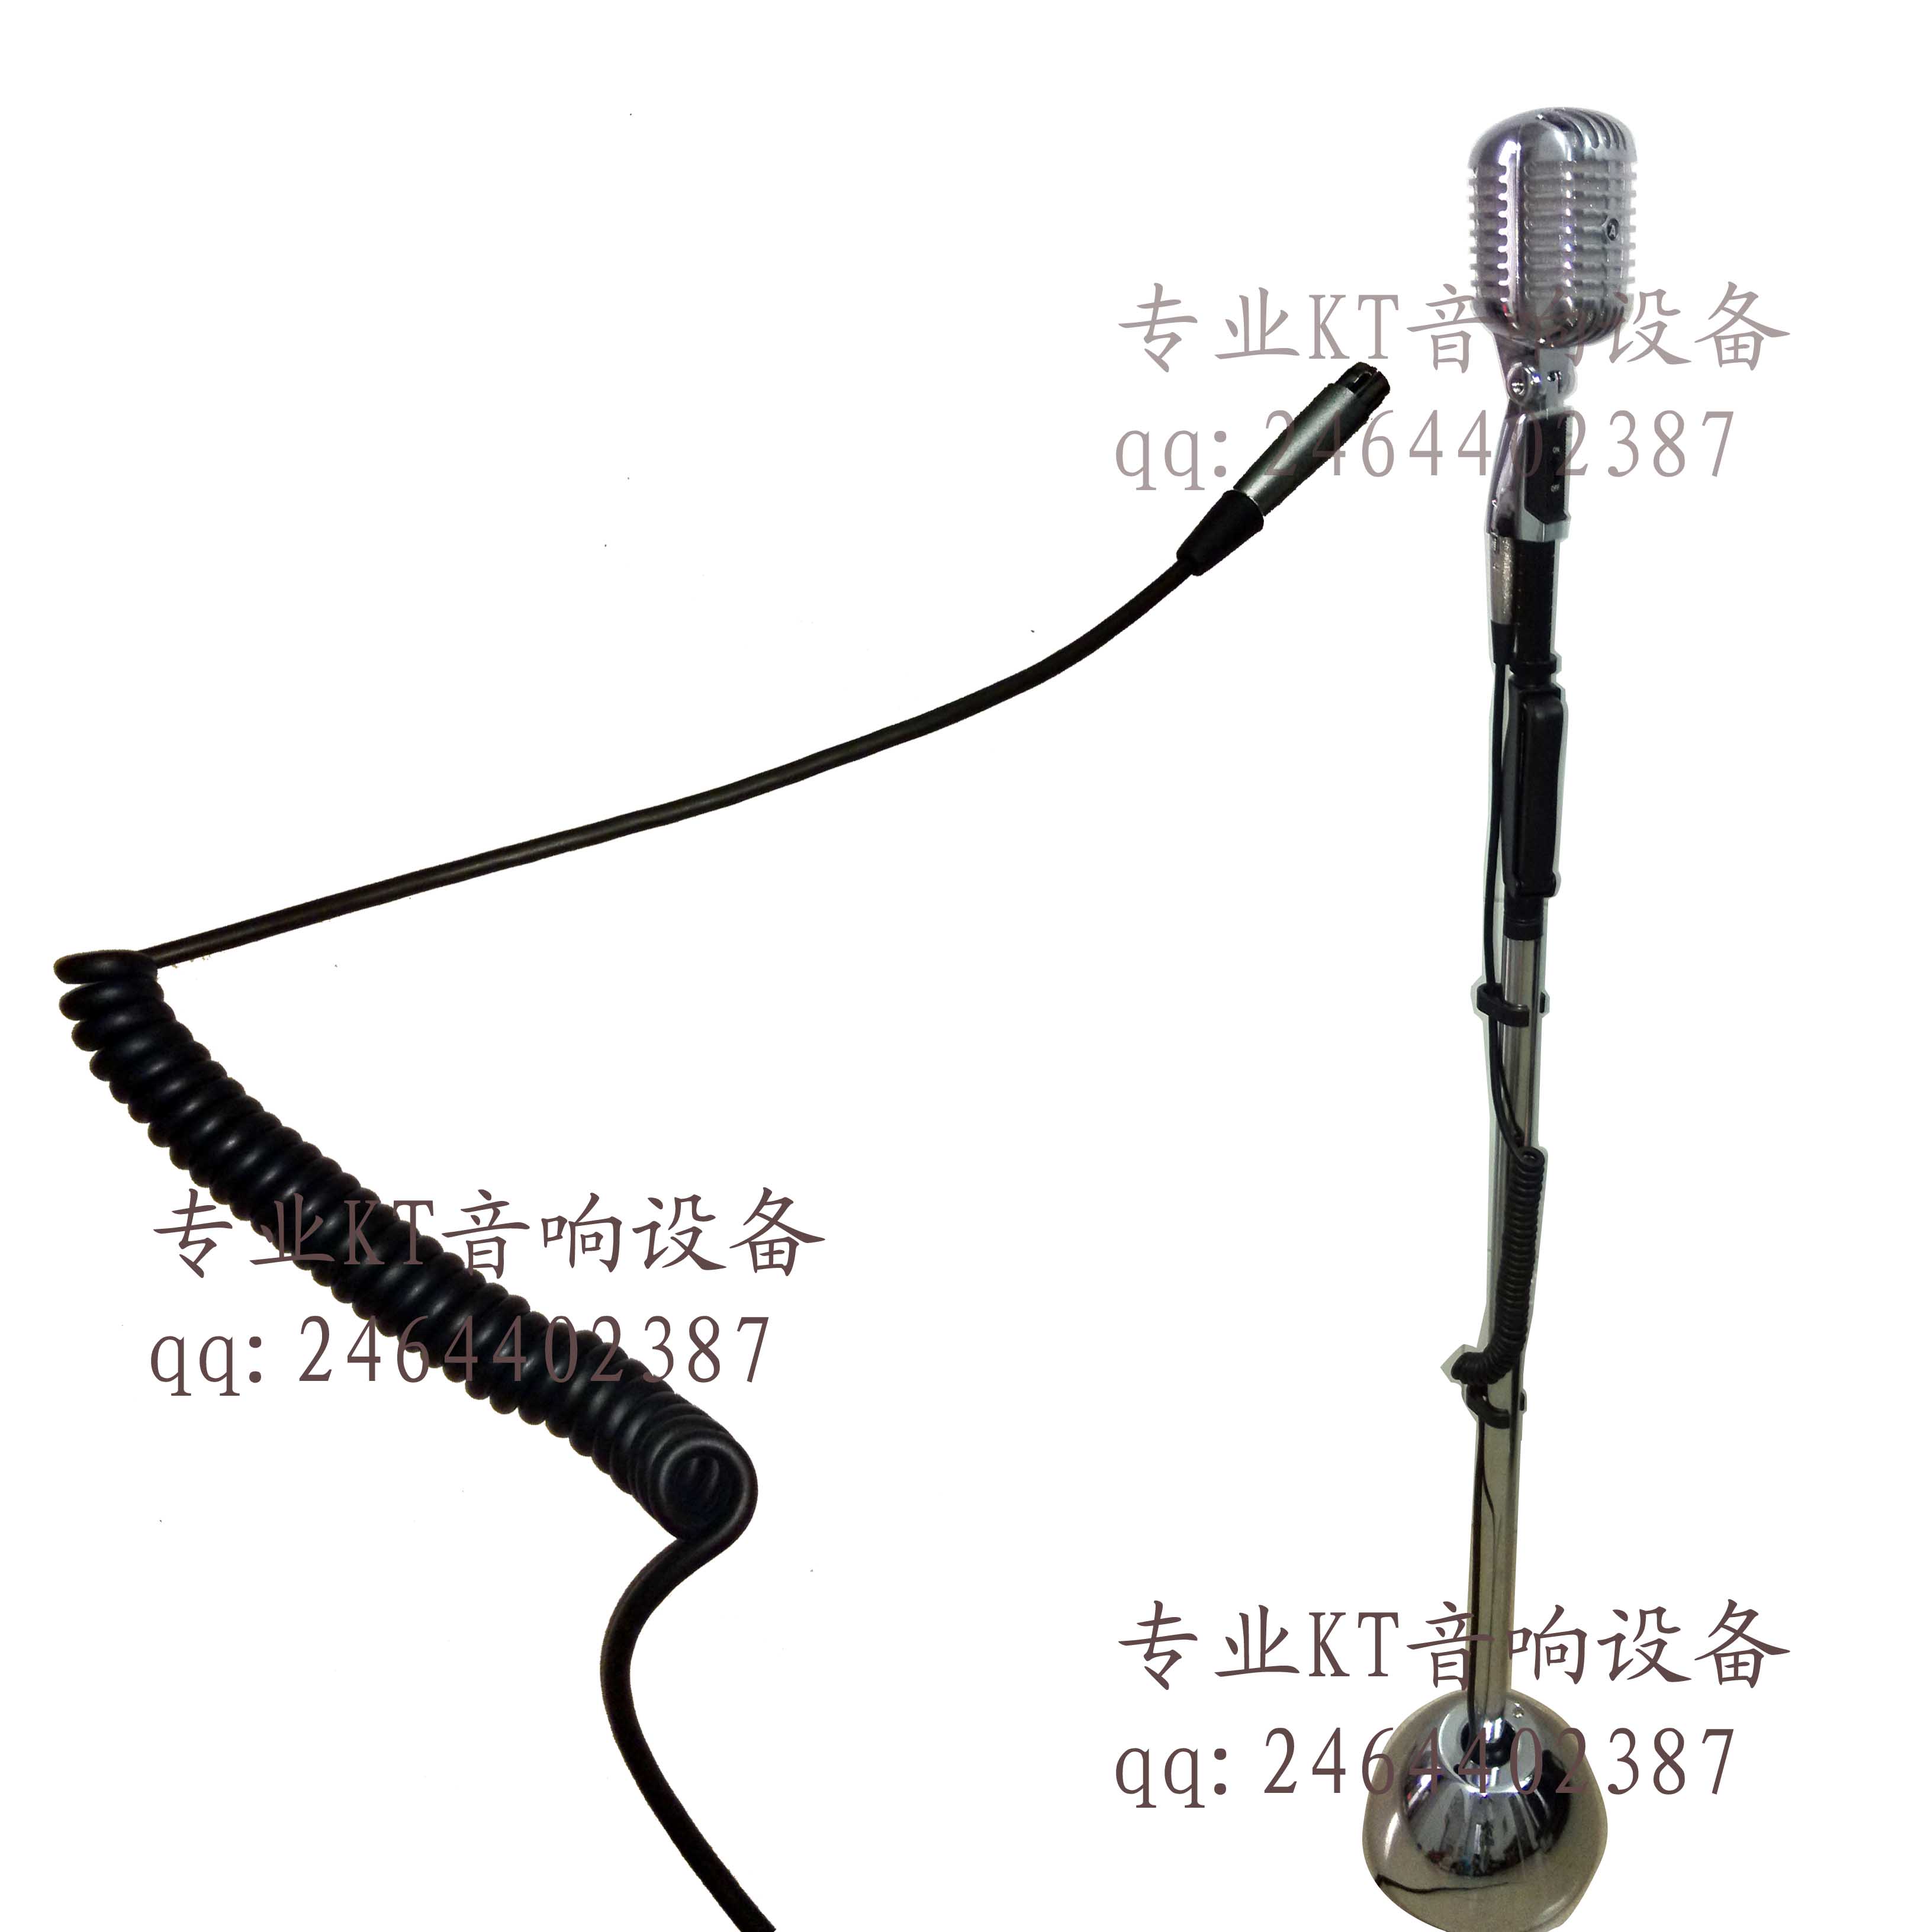 KTV 专用 高品质 复古话筒 摇麦 复古式 支架 弹簧线 音频输出线